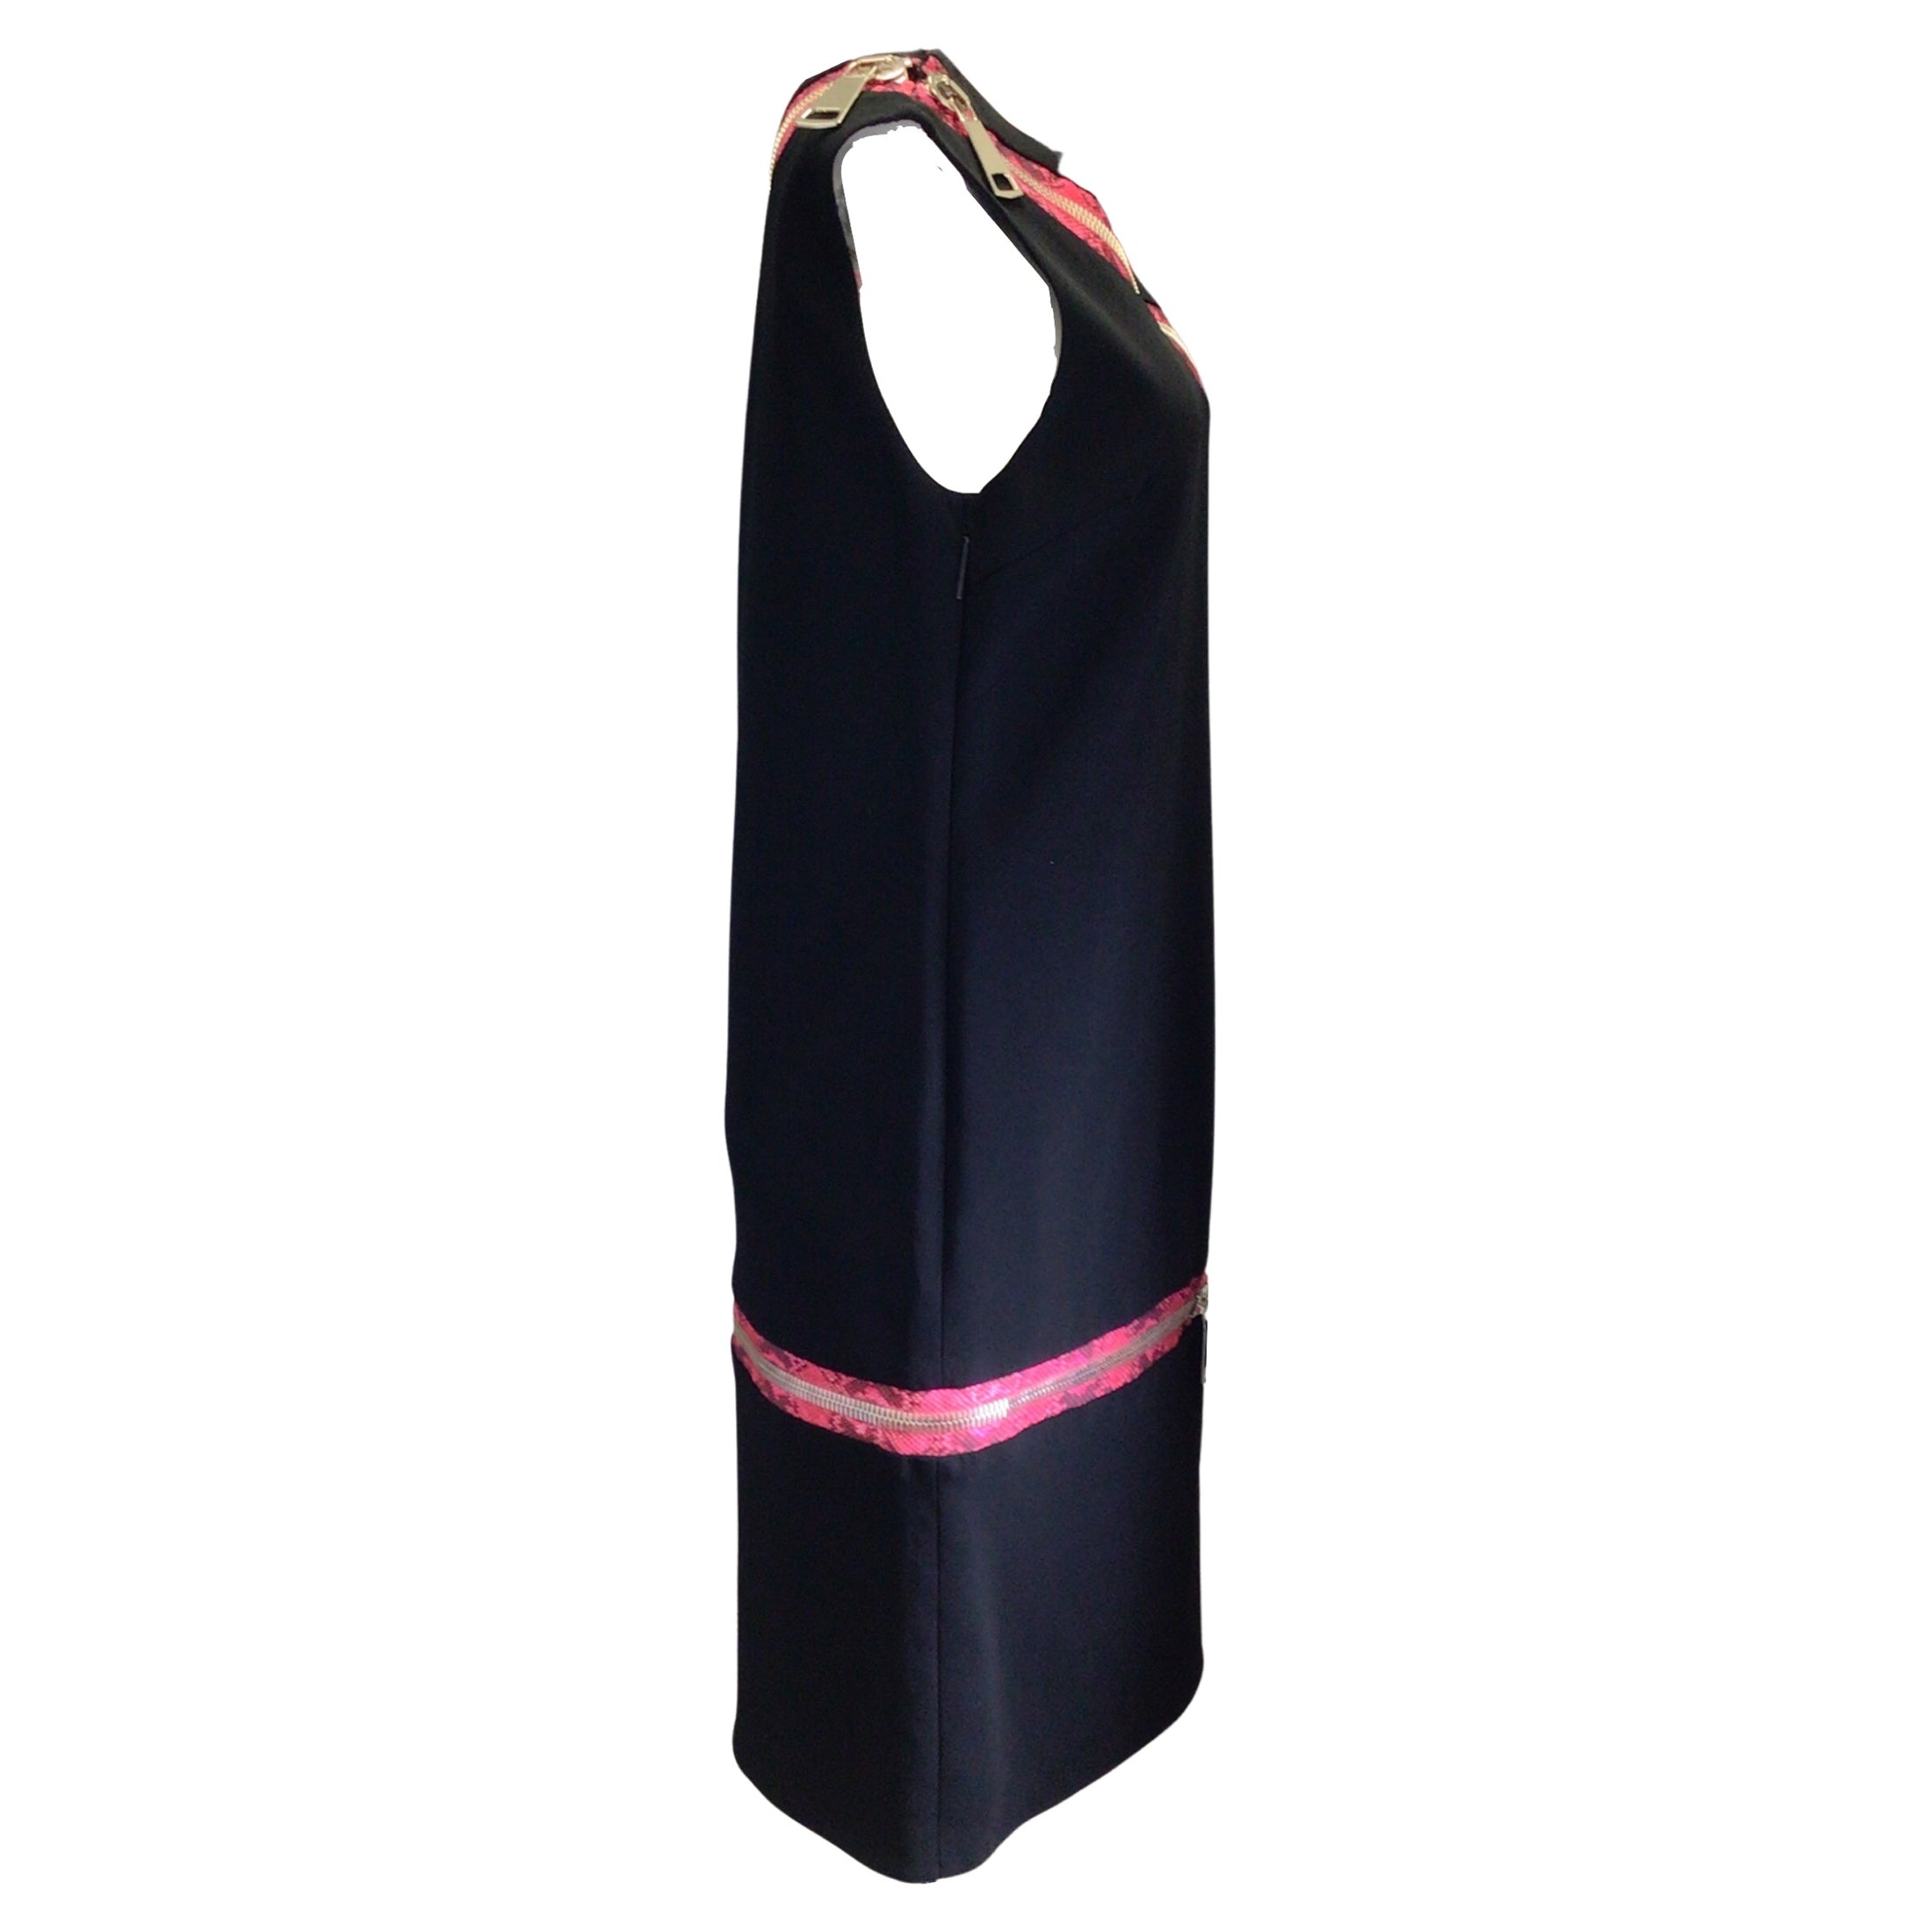 Christopher Kane Black / Pink Snake Print Zipper Detail Sleeveless Crepe Dress